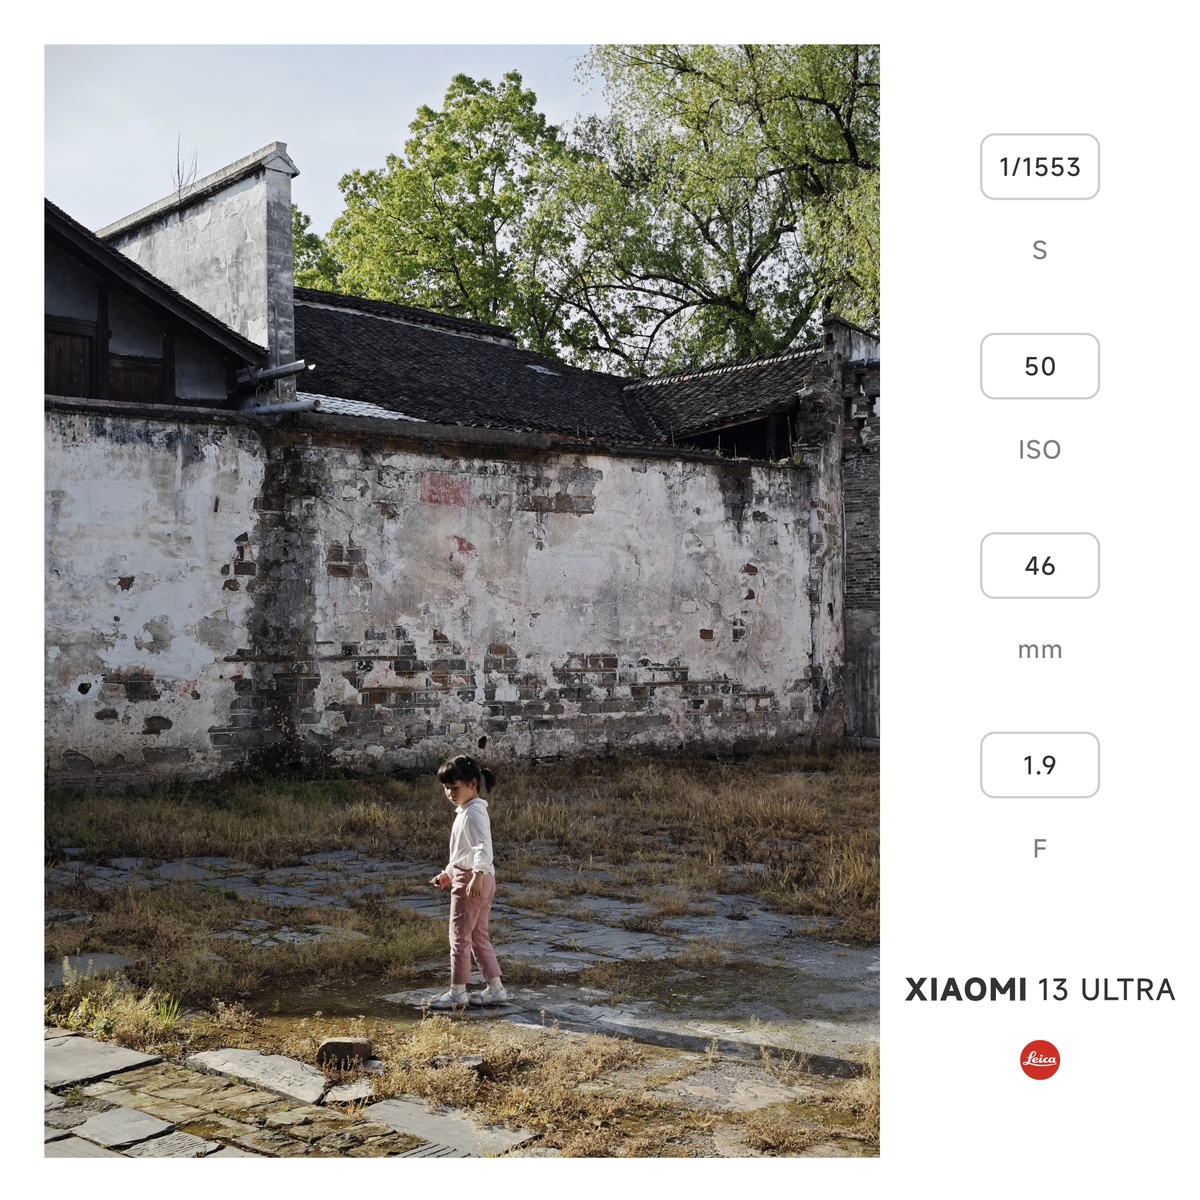 一个小女孩站在一个水坑旁边 旁边有一堵墙 墙里面有人玩。